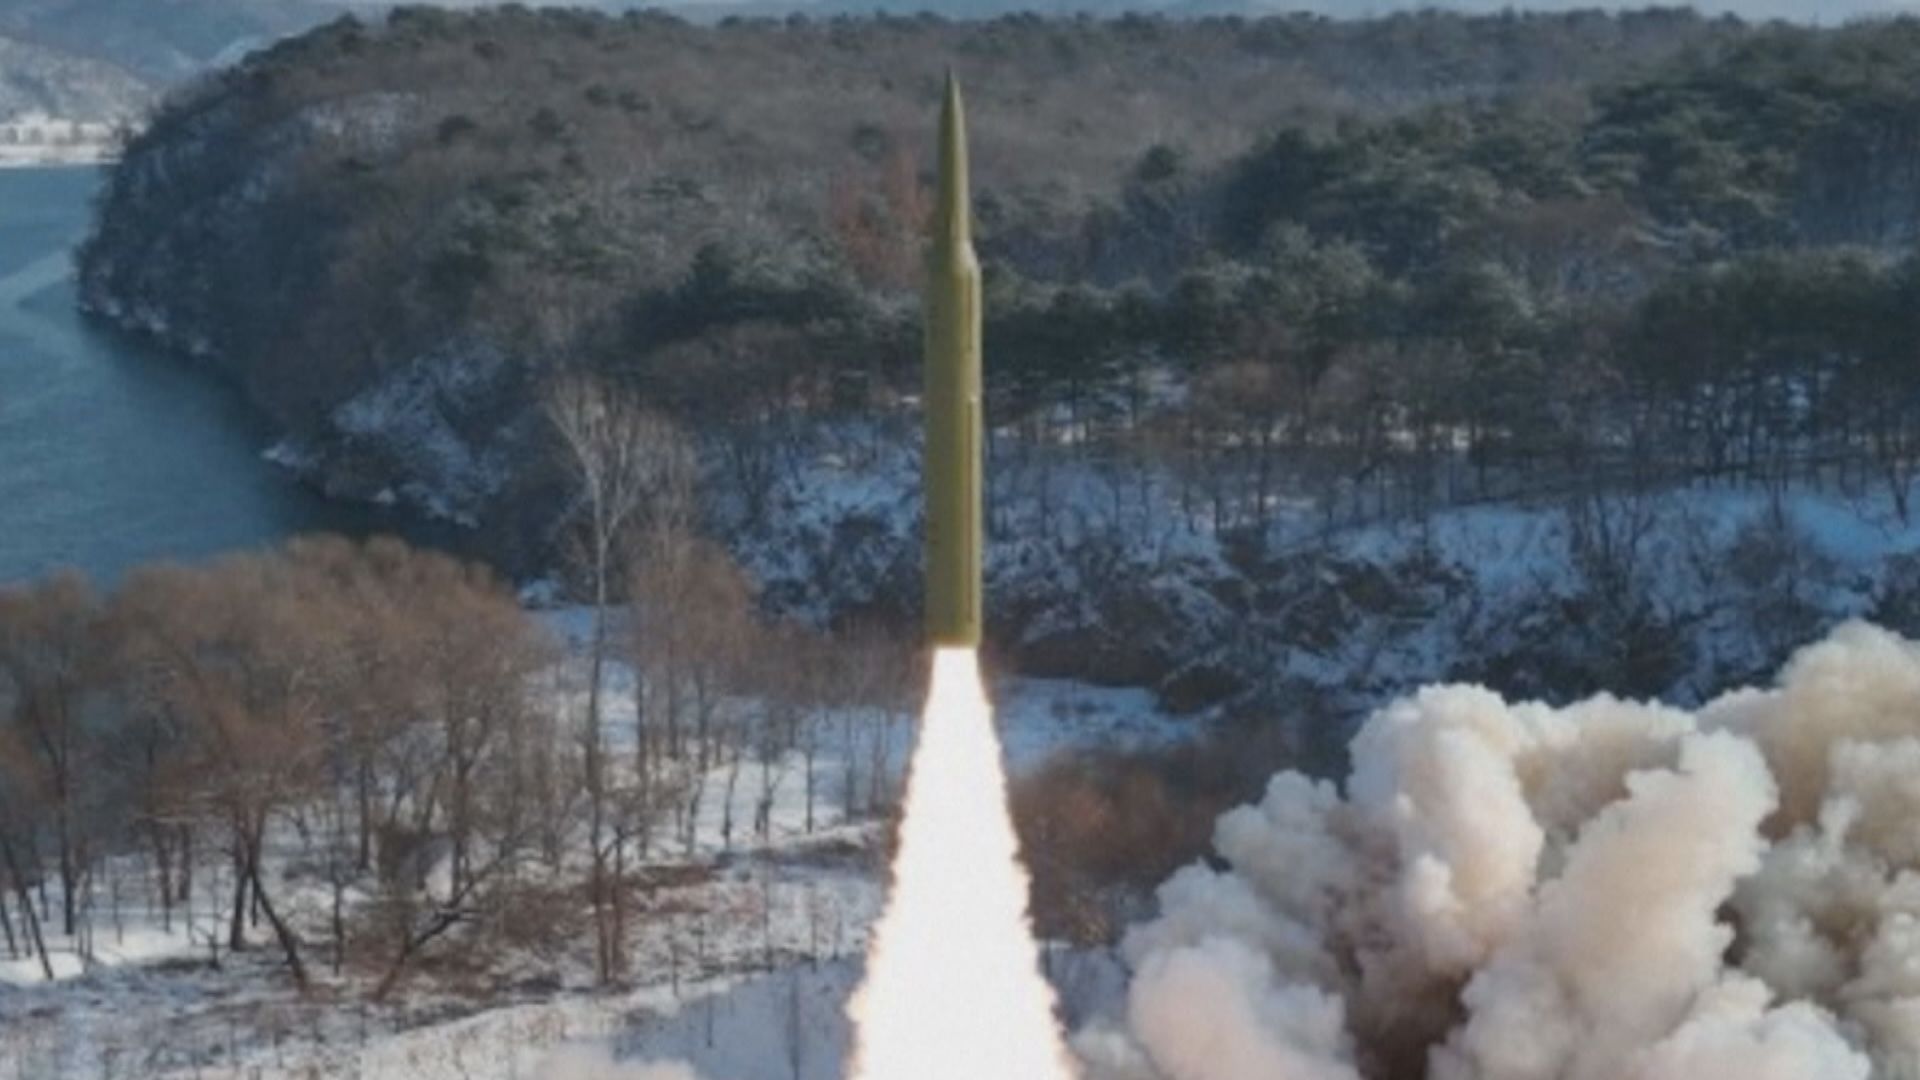 南韓及日本指北韓發射彈道導彈 岸田文雄指不能接受